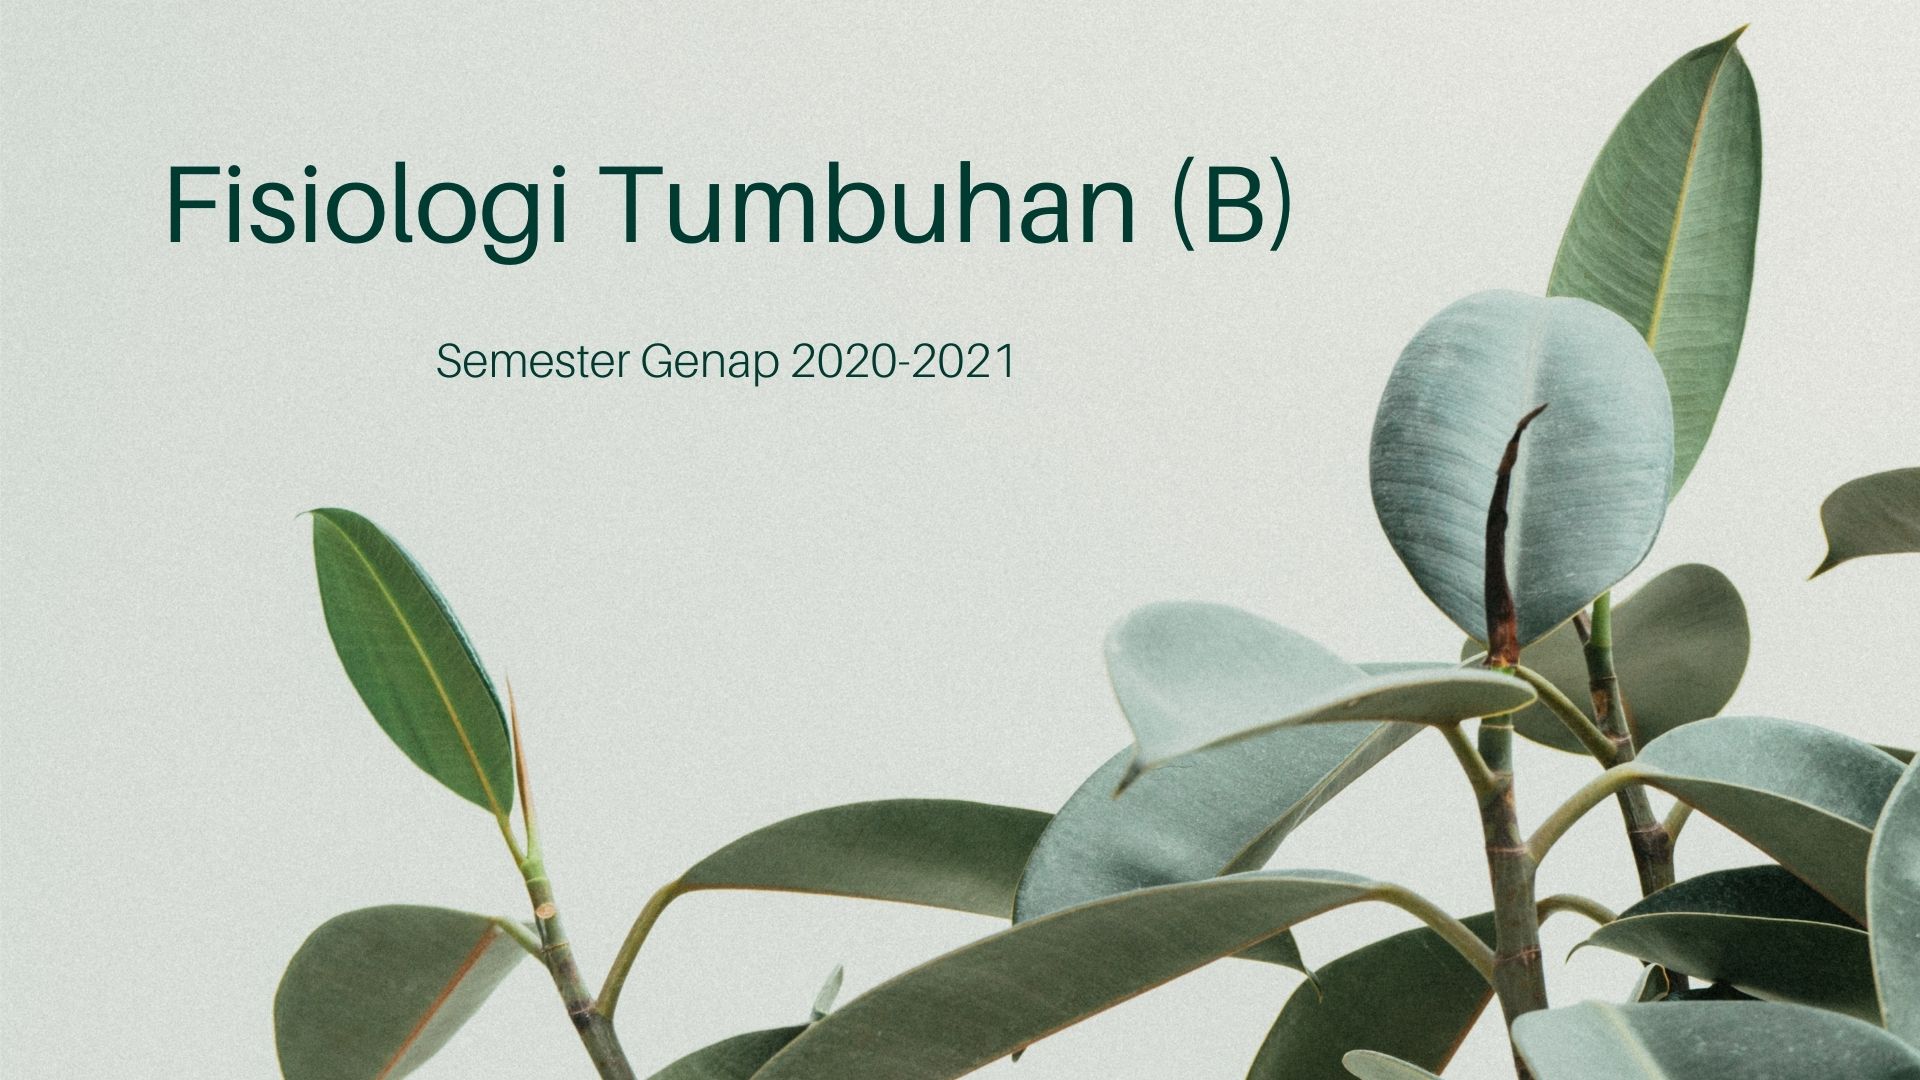 Fisiologi Tumbuhan Genap 2020-2021 (B)